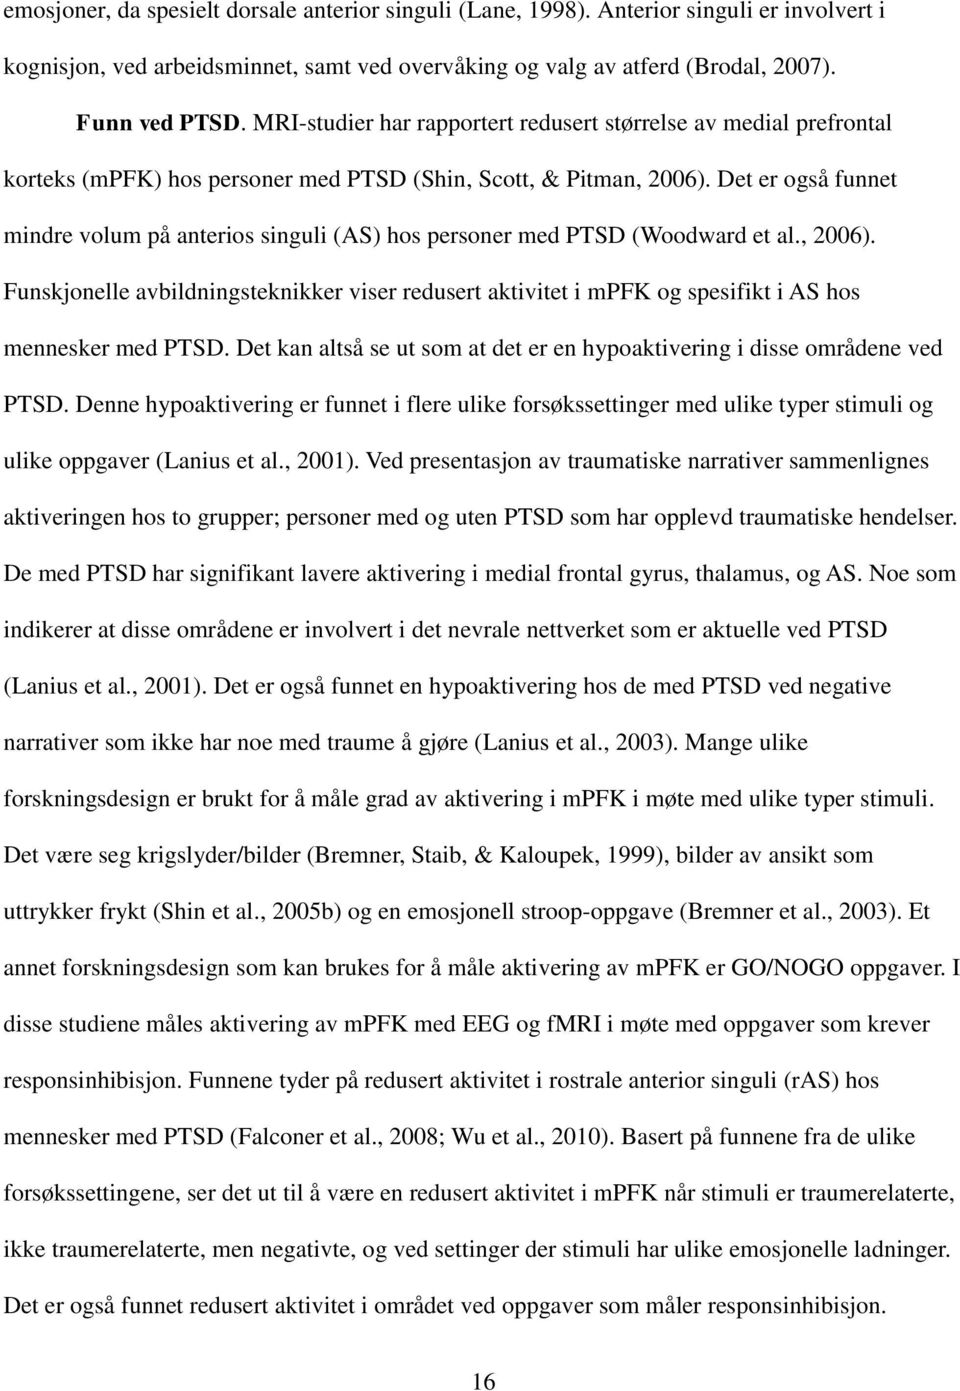 Det er også funnet mindre volum på anterios singuli (AS) hos personer med PTSD (Woodward et al., 2006).